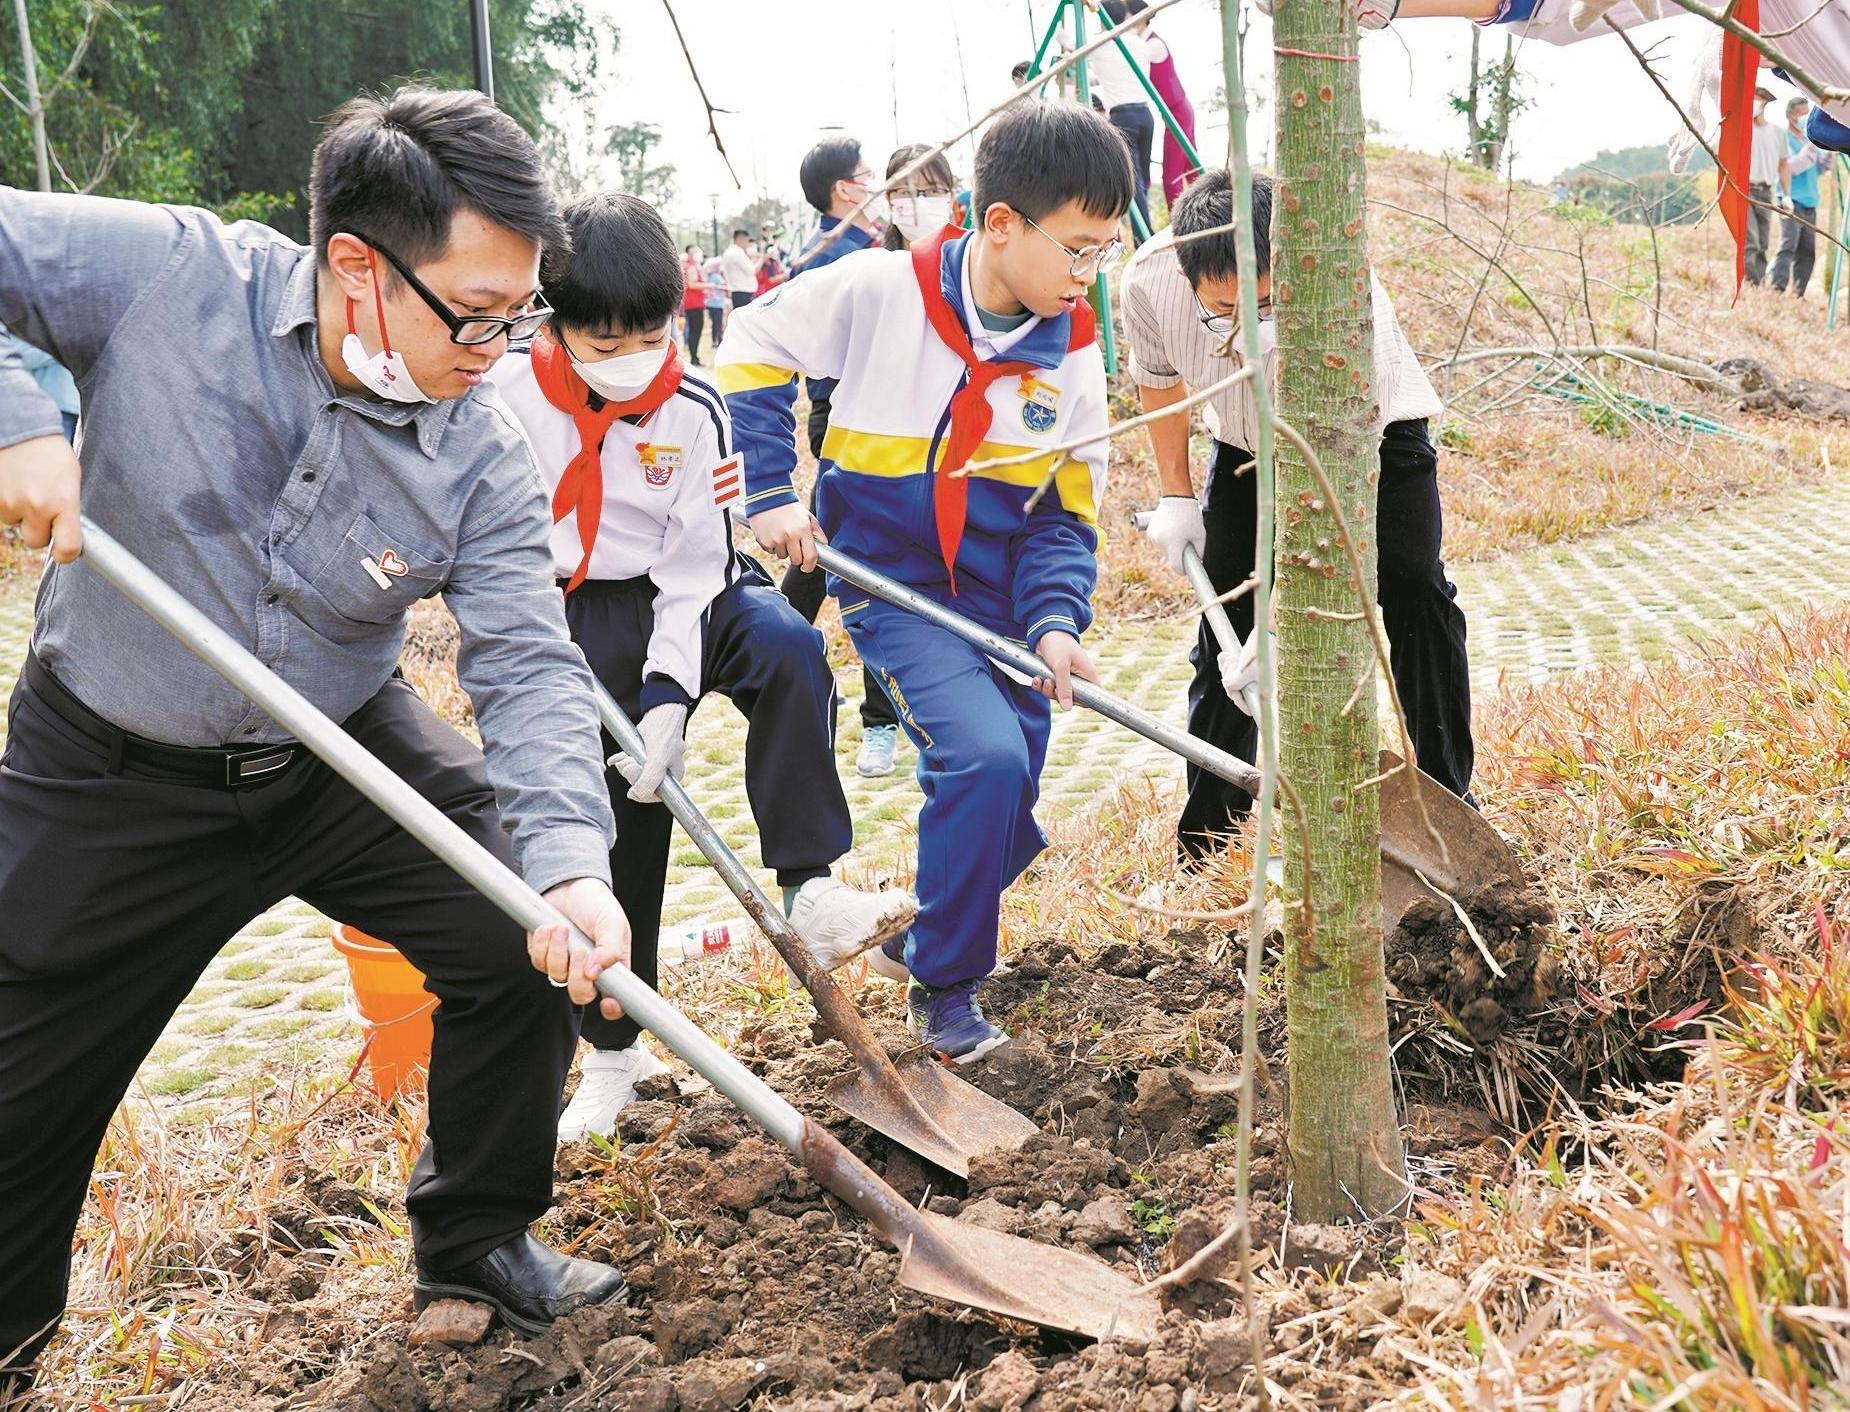 广东省开展推进绿美广东生态建设义务植树活动